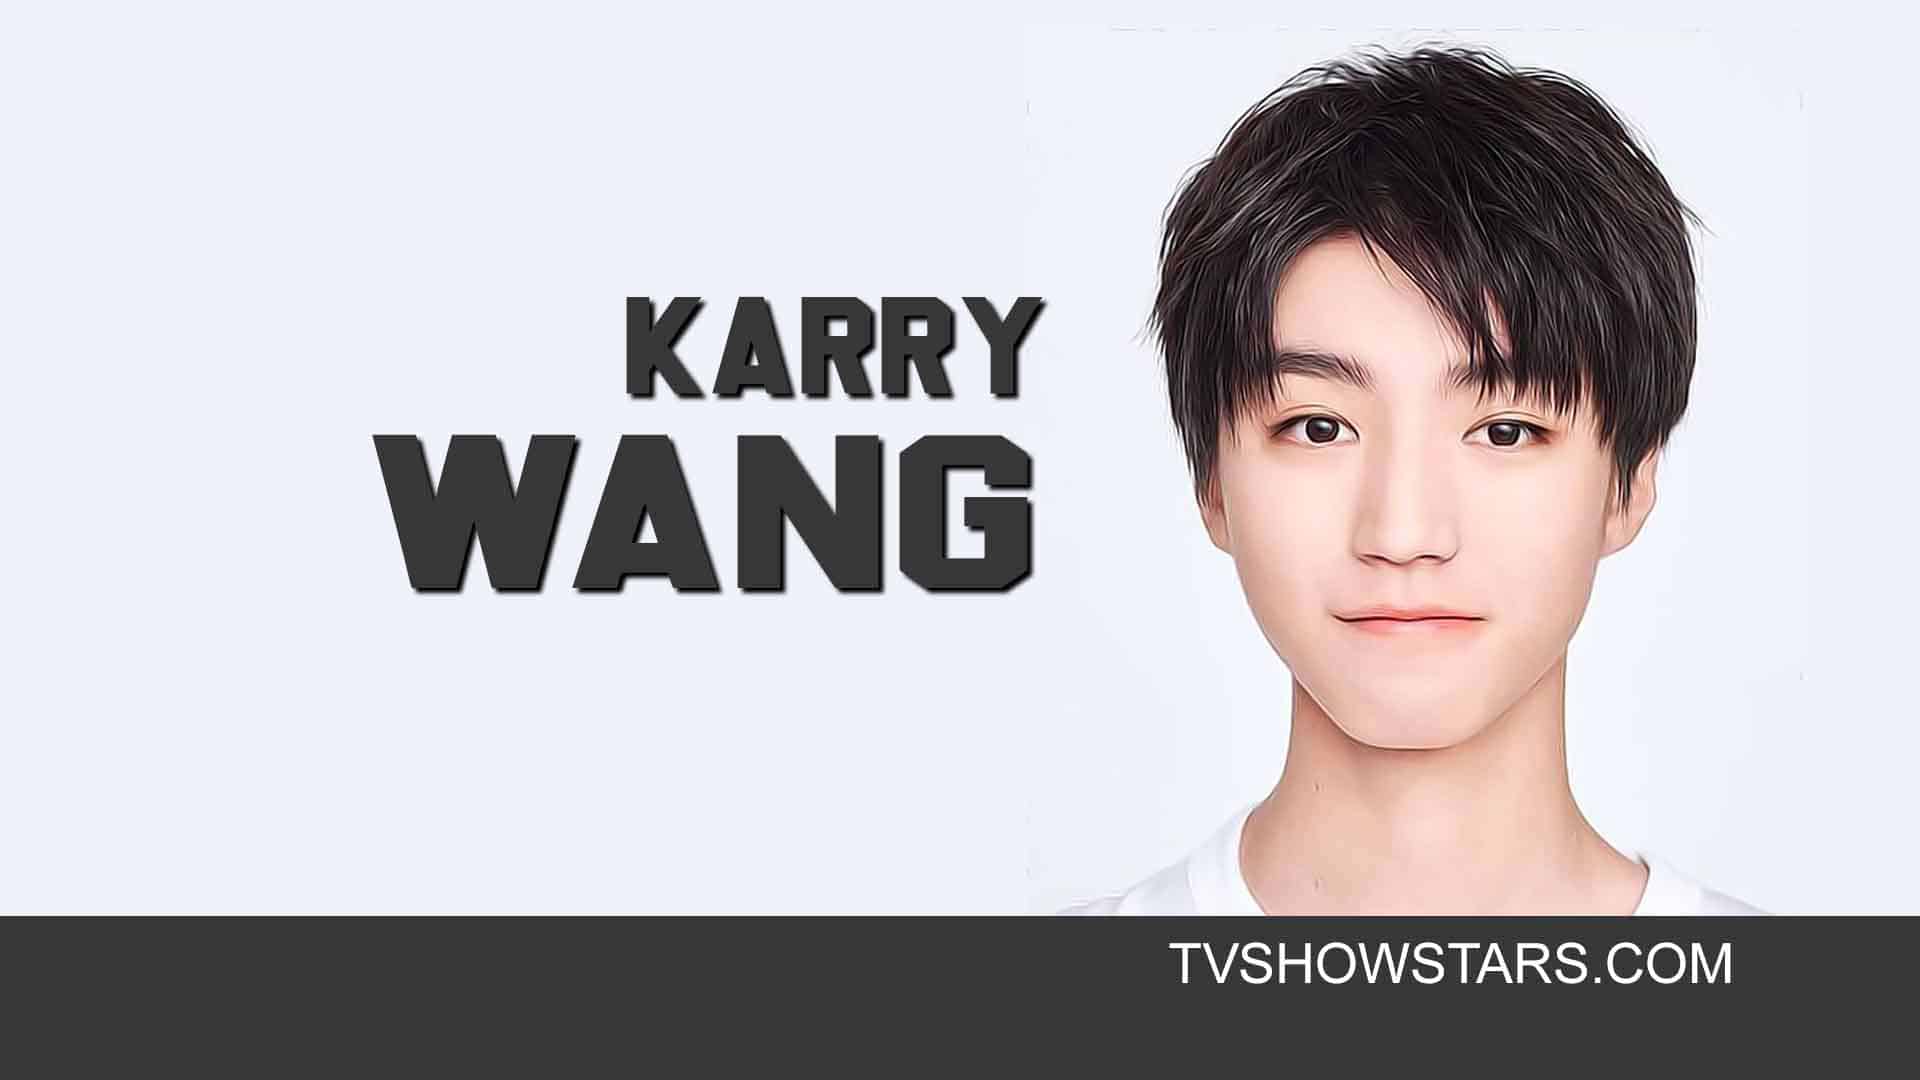 karry wang